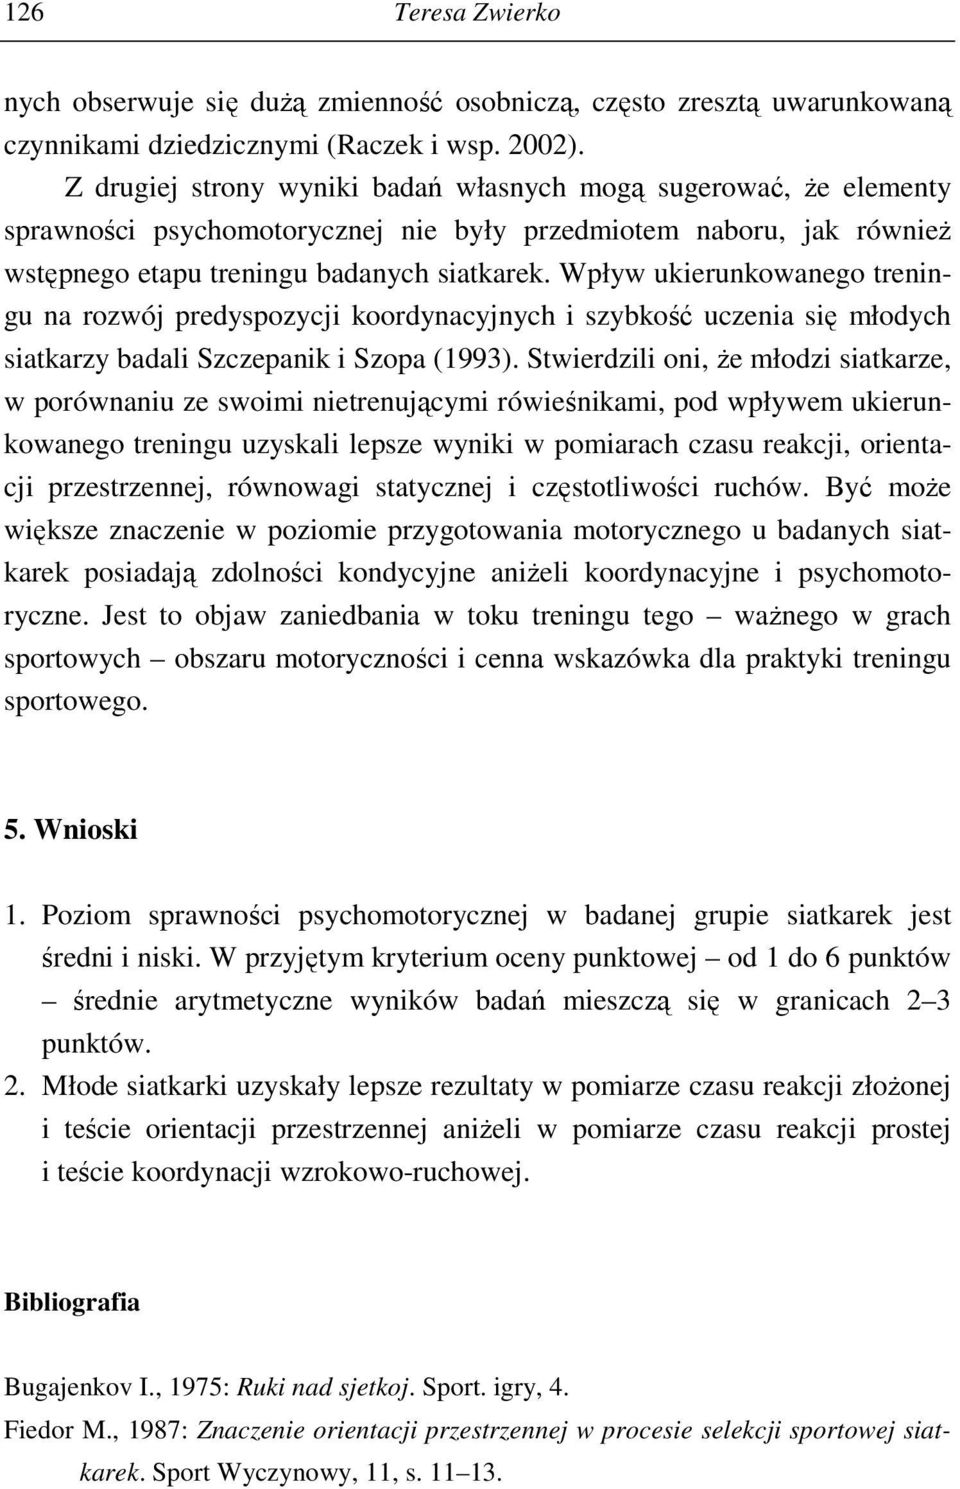 Wpływ ukierunkowanego treningu na rozwój predyspozycji koordynacyjnych i szybkość uczenia się młodych siatkarzy badali Szczepanik i Szopa (1993).